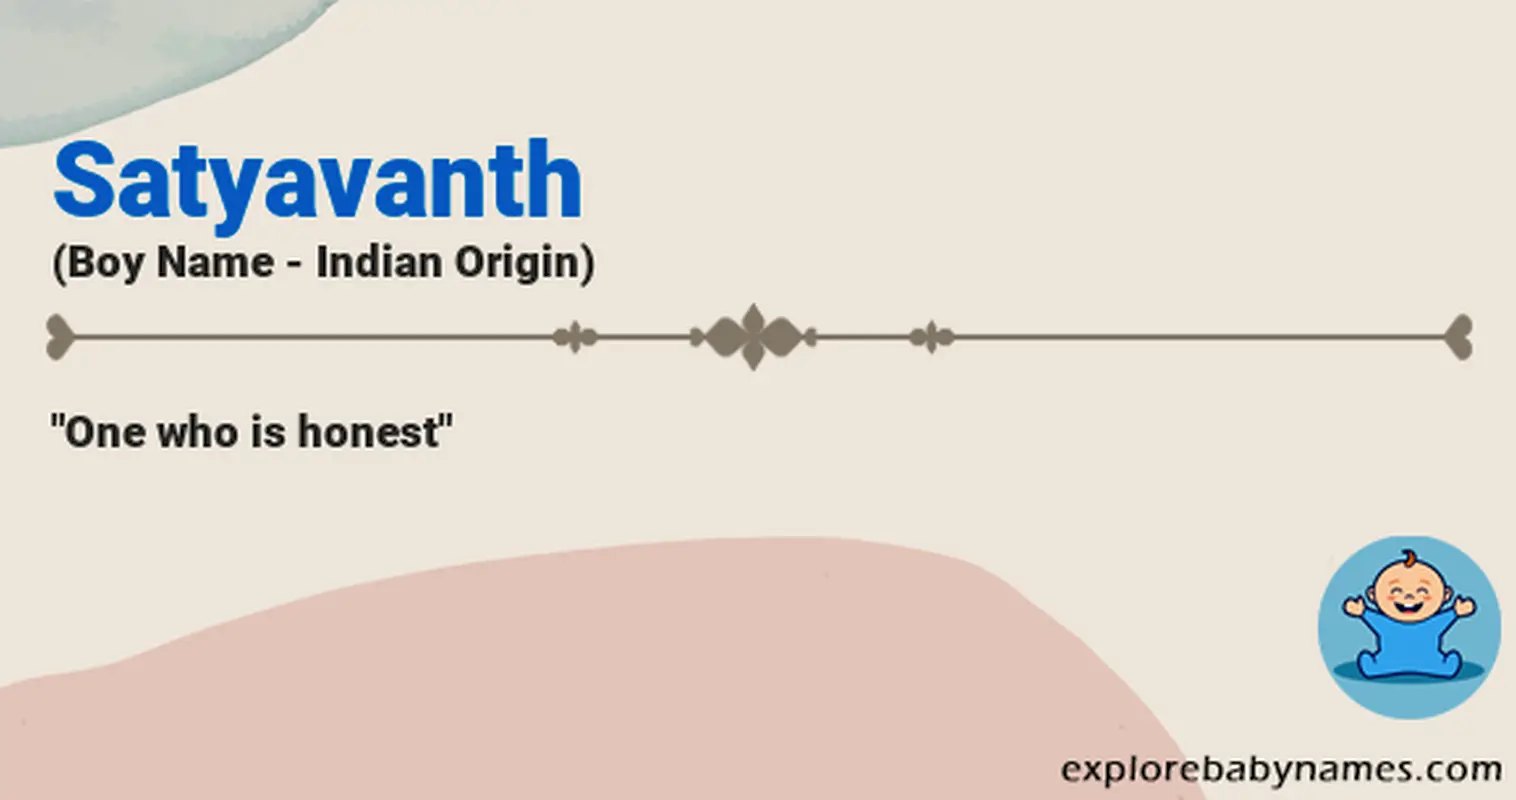 Meaning of Satyavanth